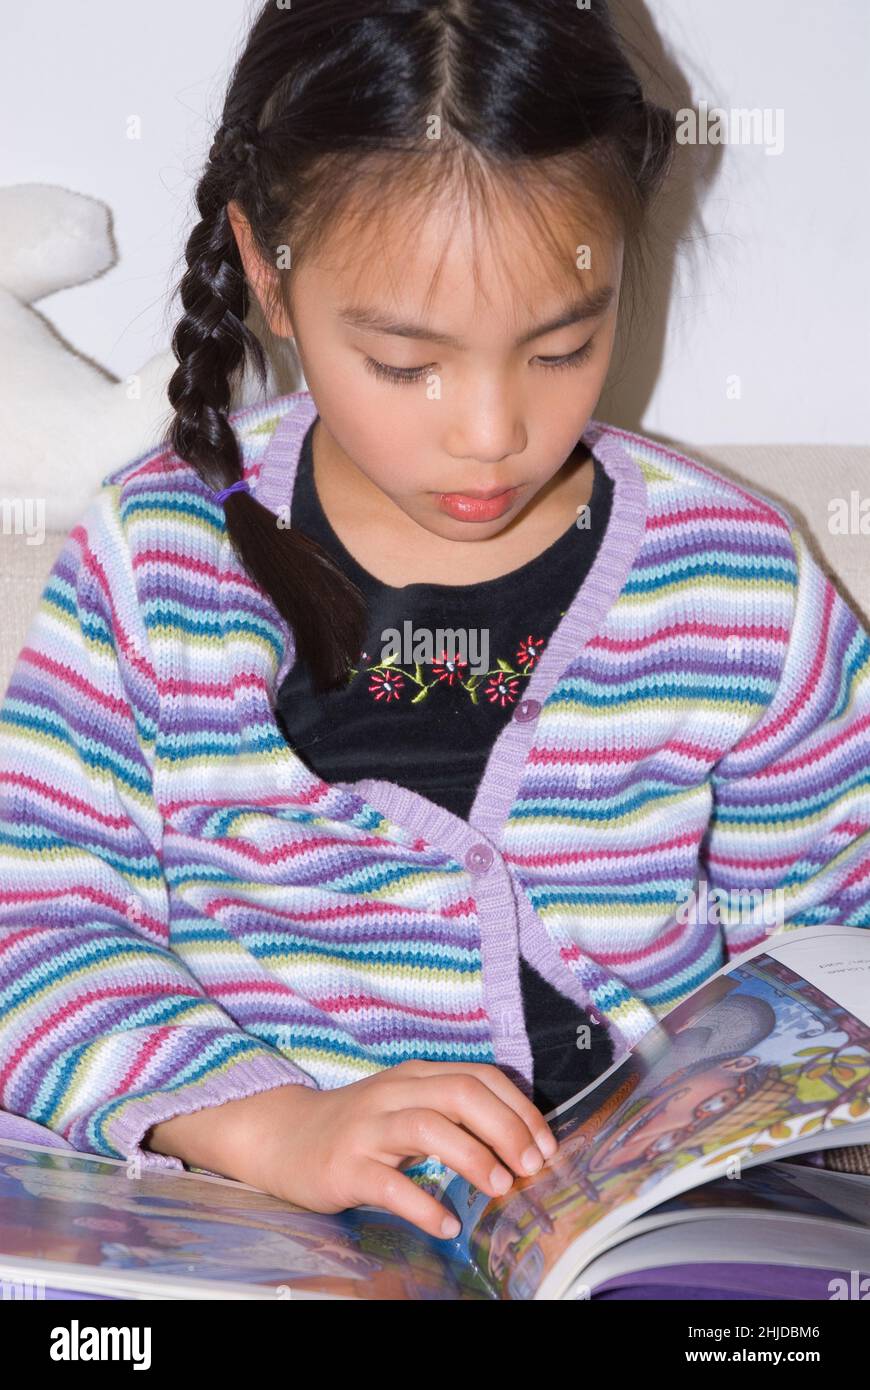 niña de 5 años sentada y leyendo un libro de fotos Foto de stock